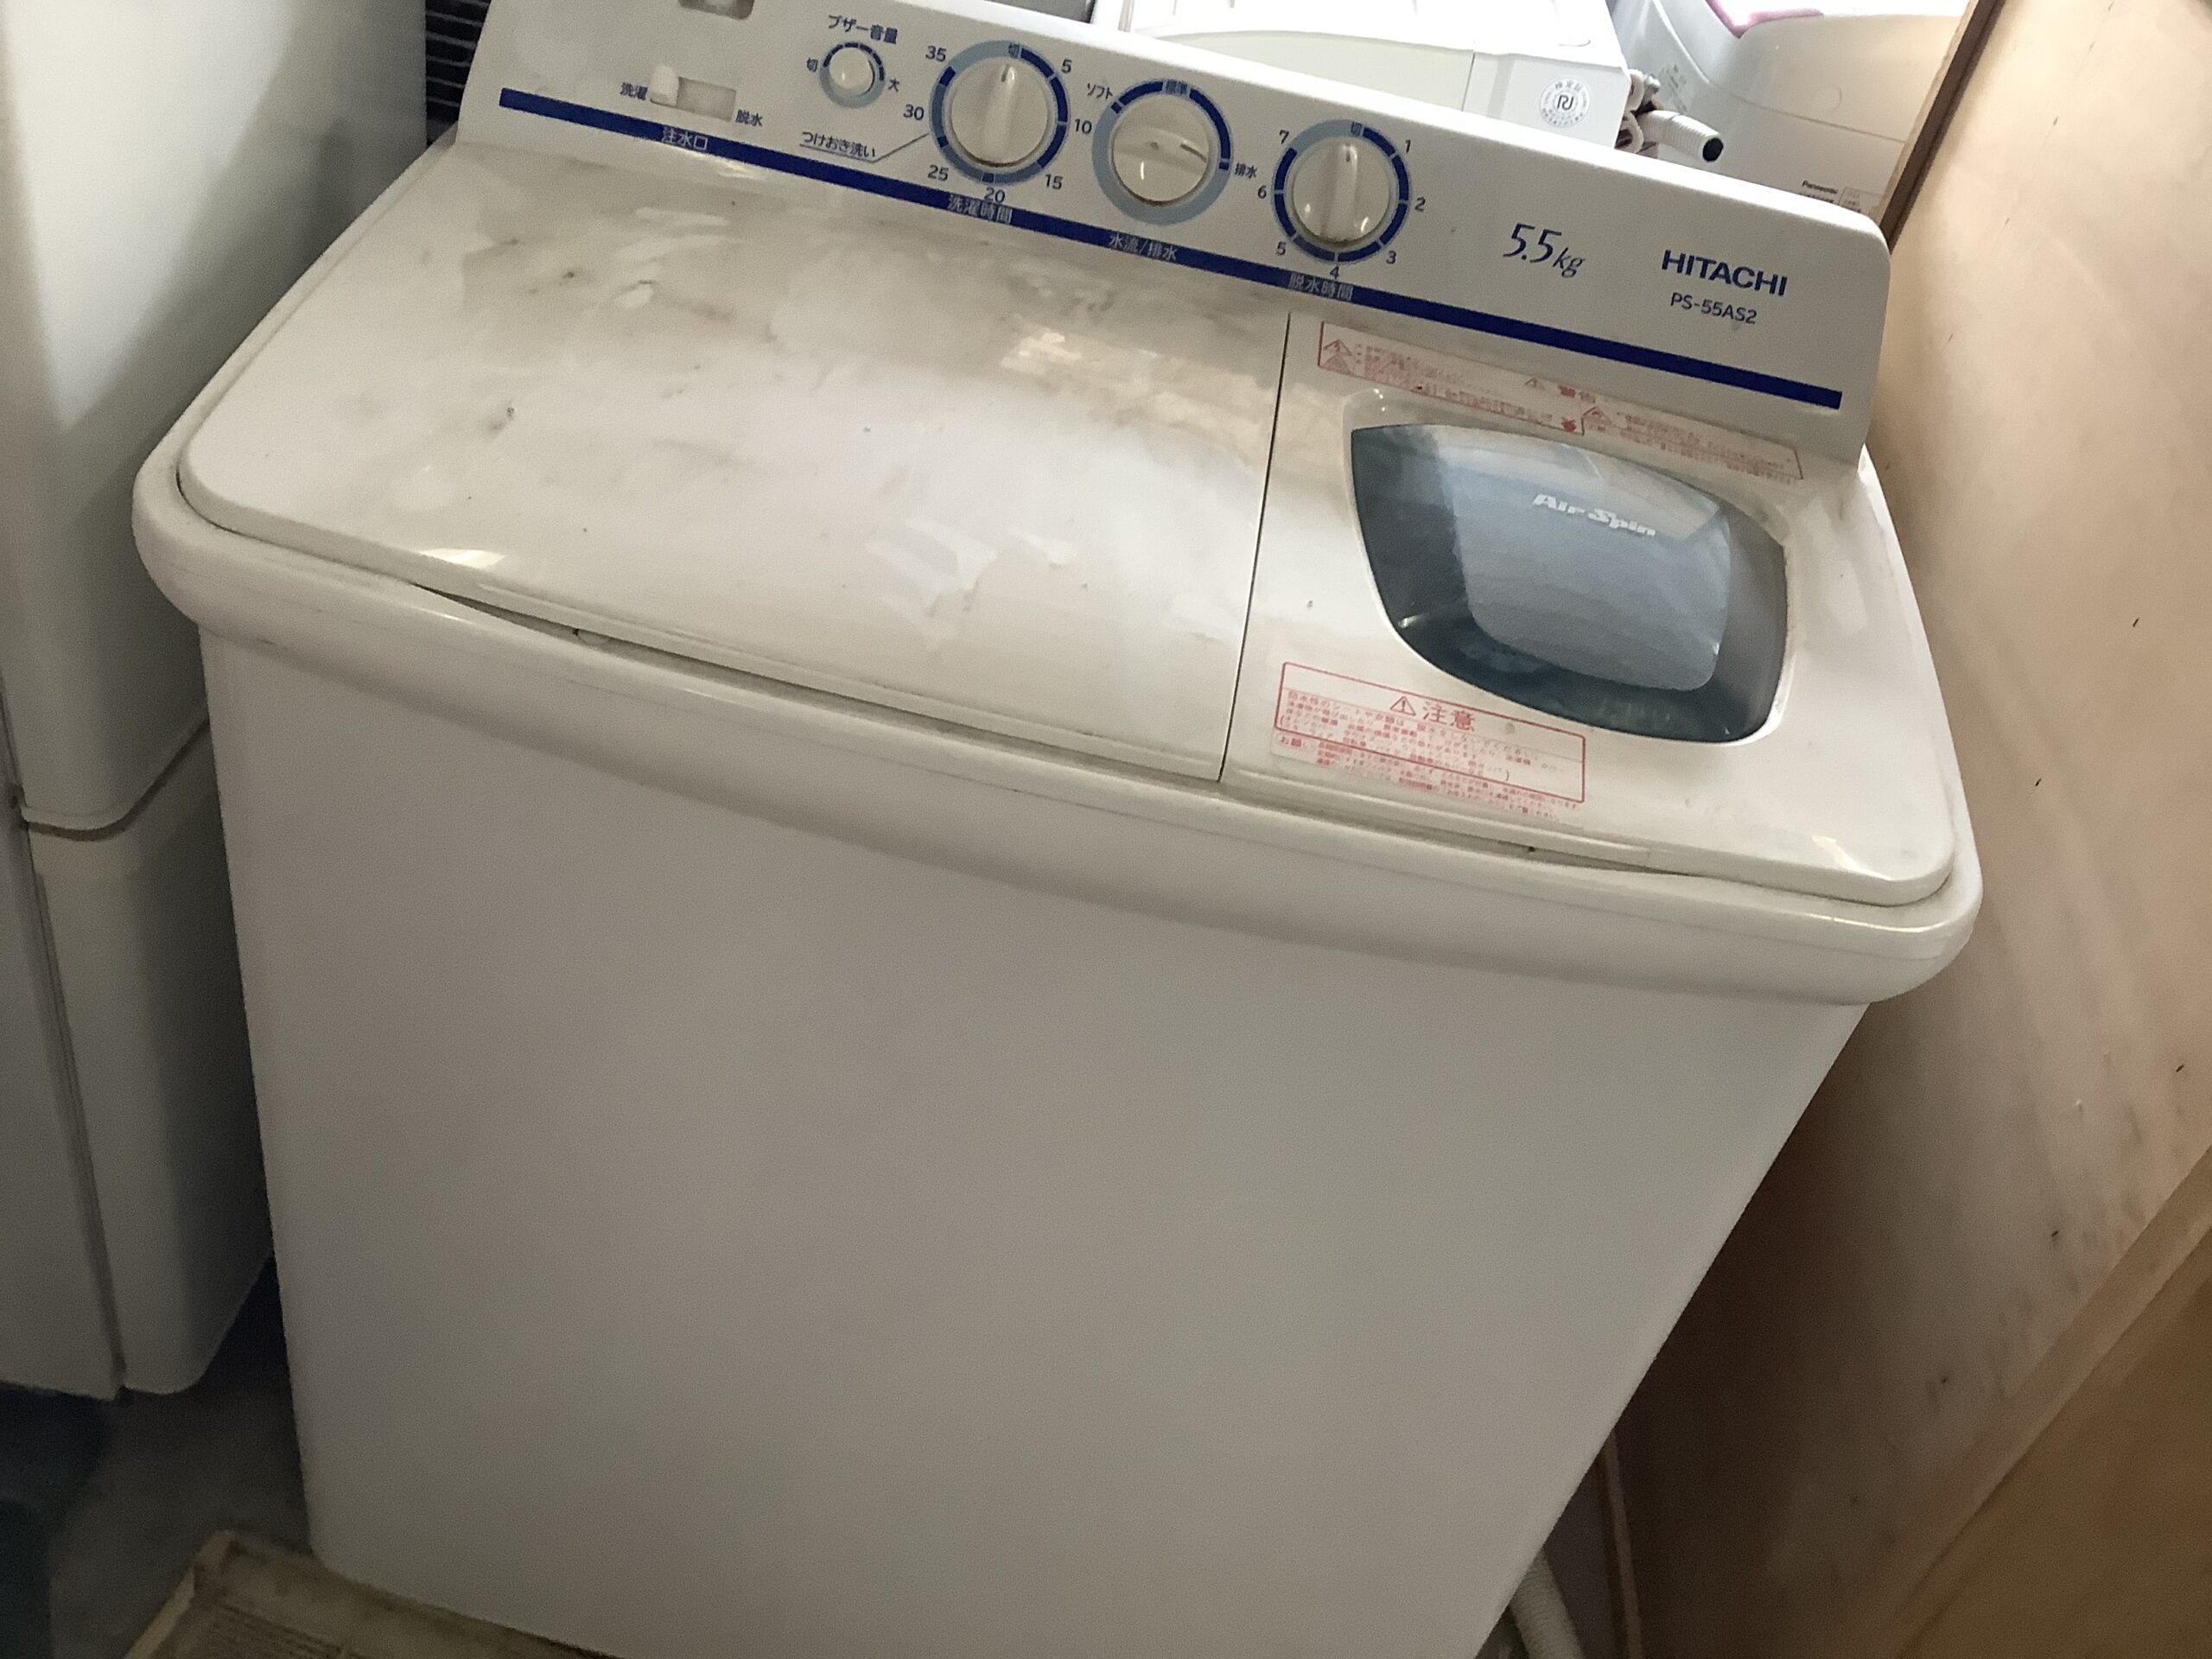 2層式洗濯機